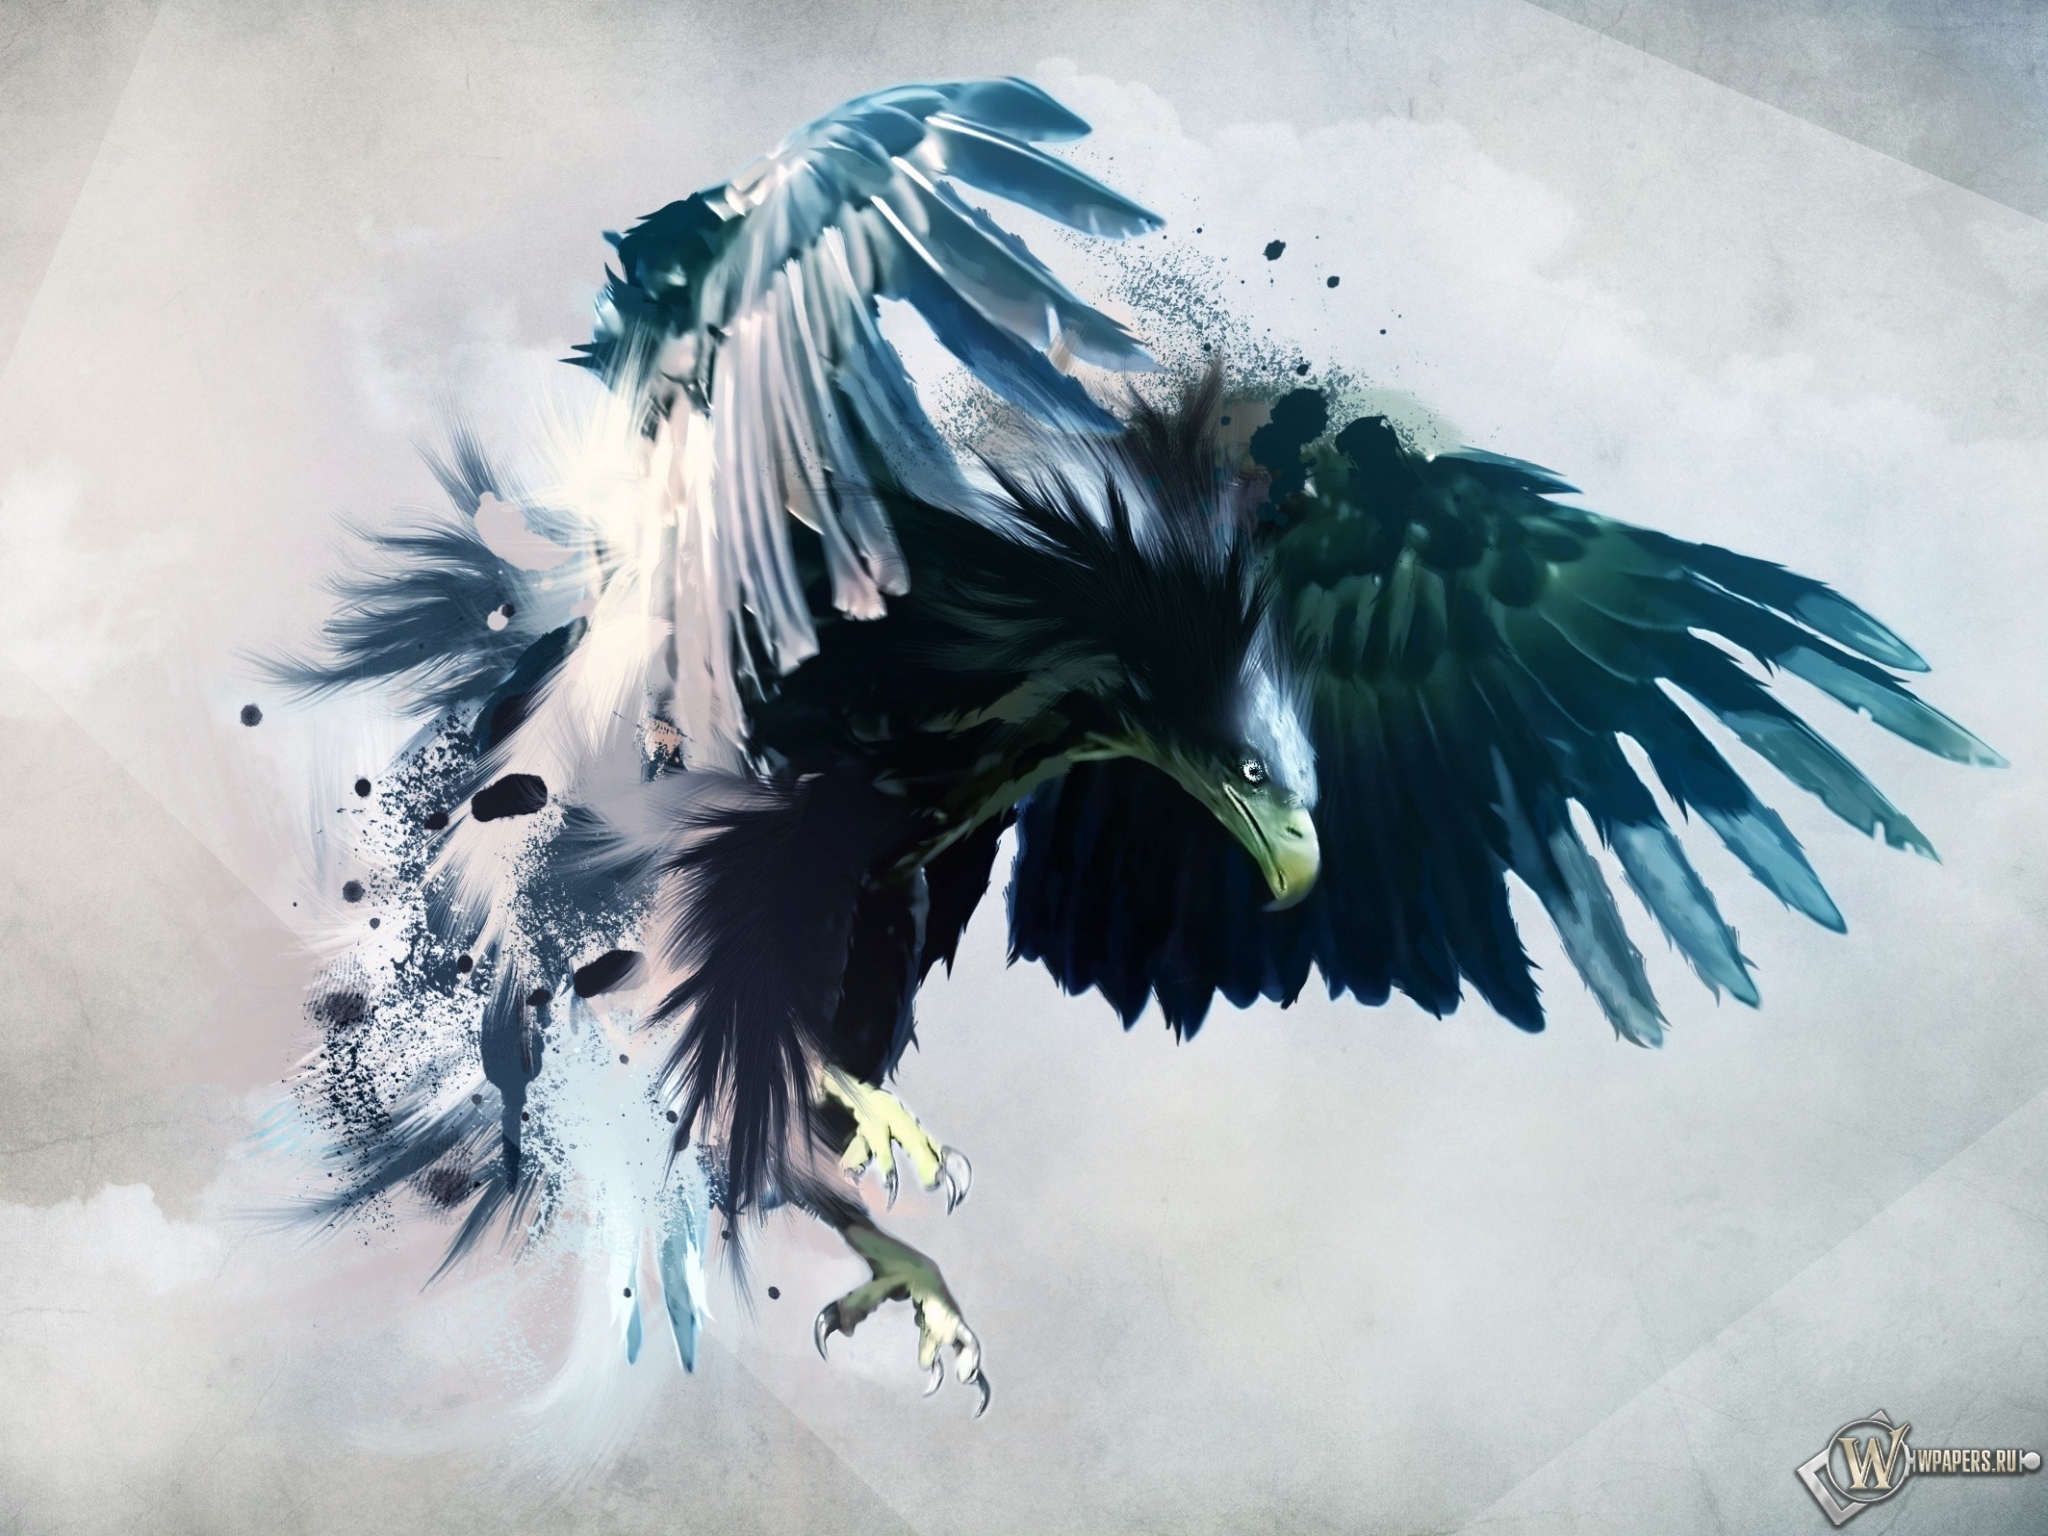 Artistic eagle 2048x1536